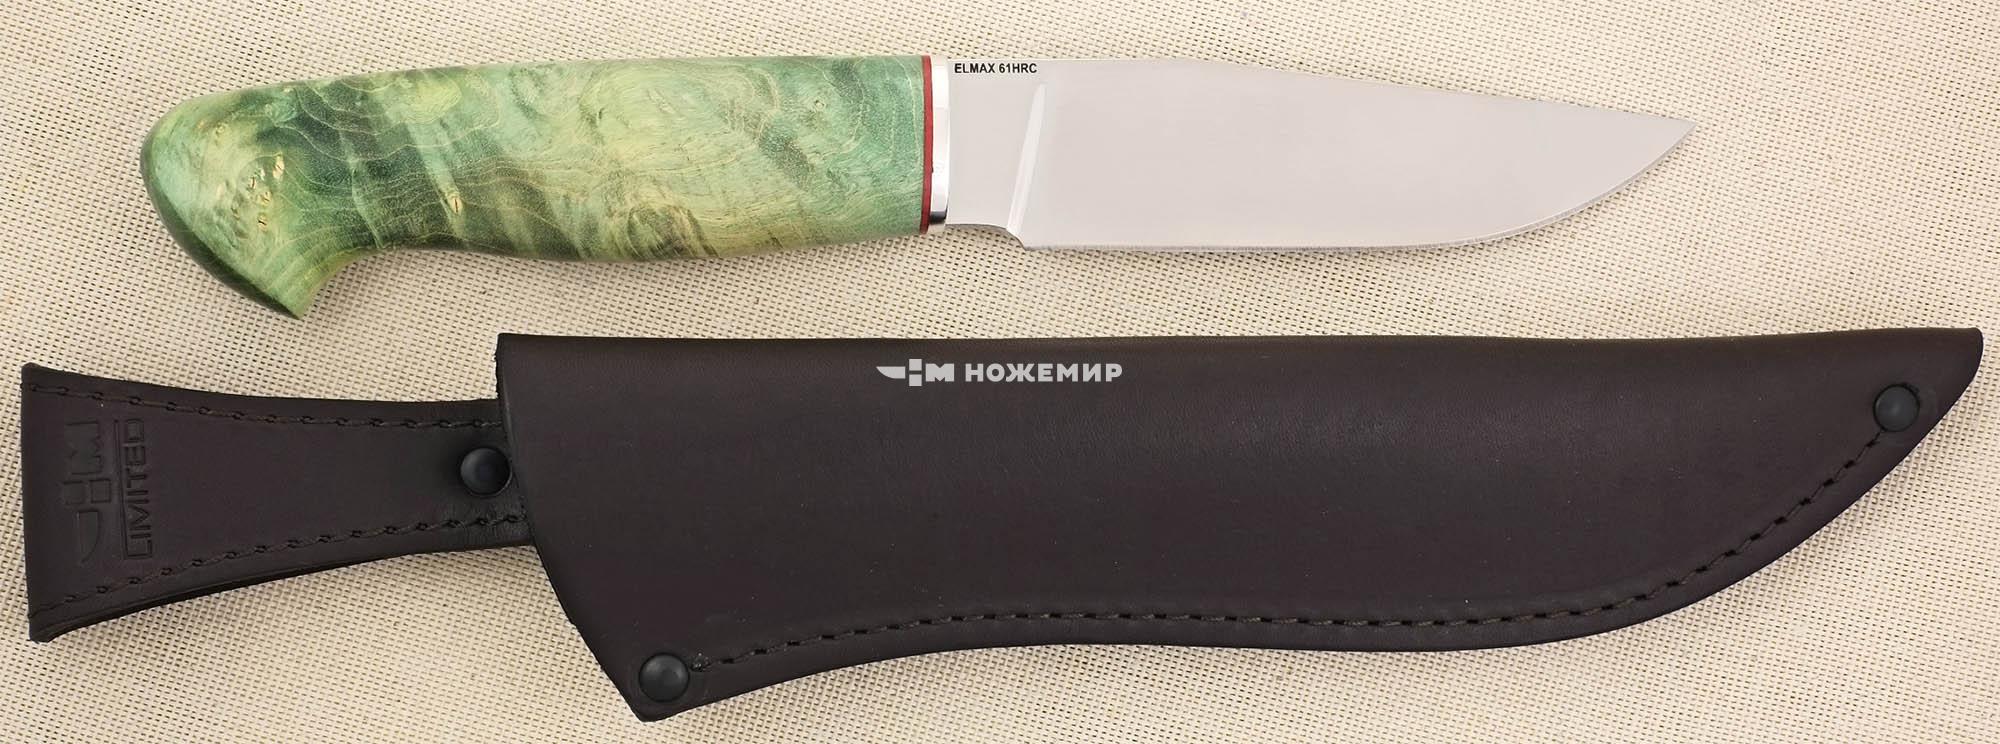 Нож Elmax ручной работы порошковая сталь Uddeholm Элмакс Ножемир Limited КУНИЦА (4101)ELMAX